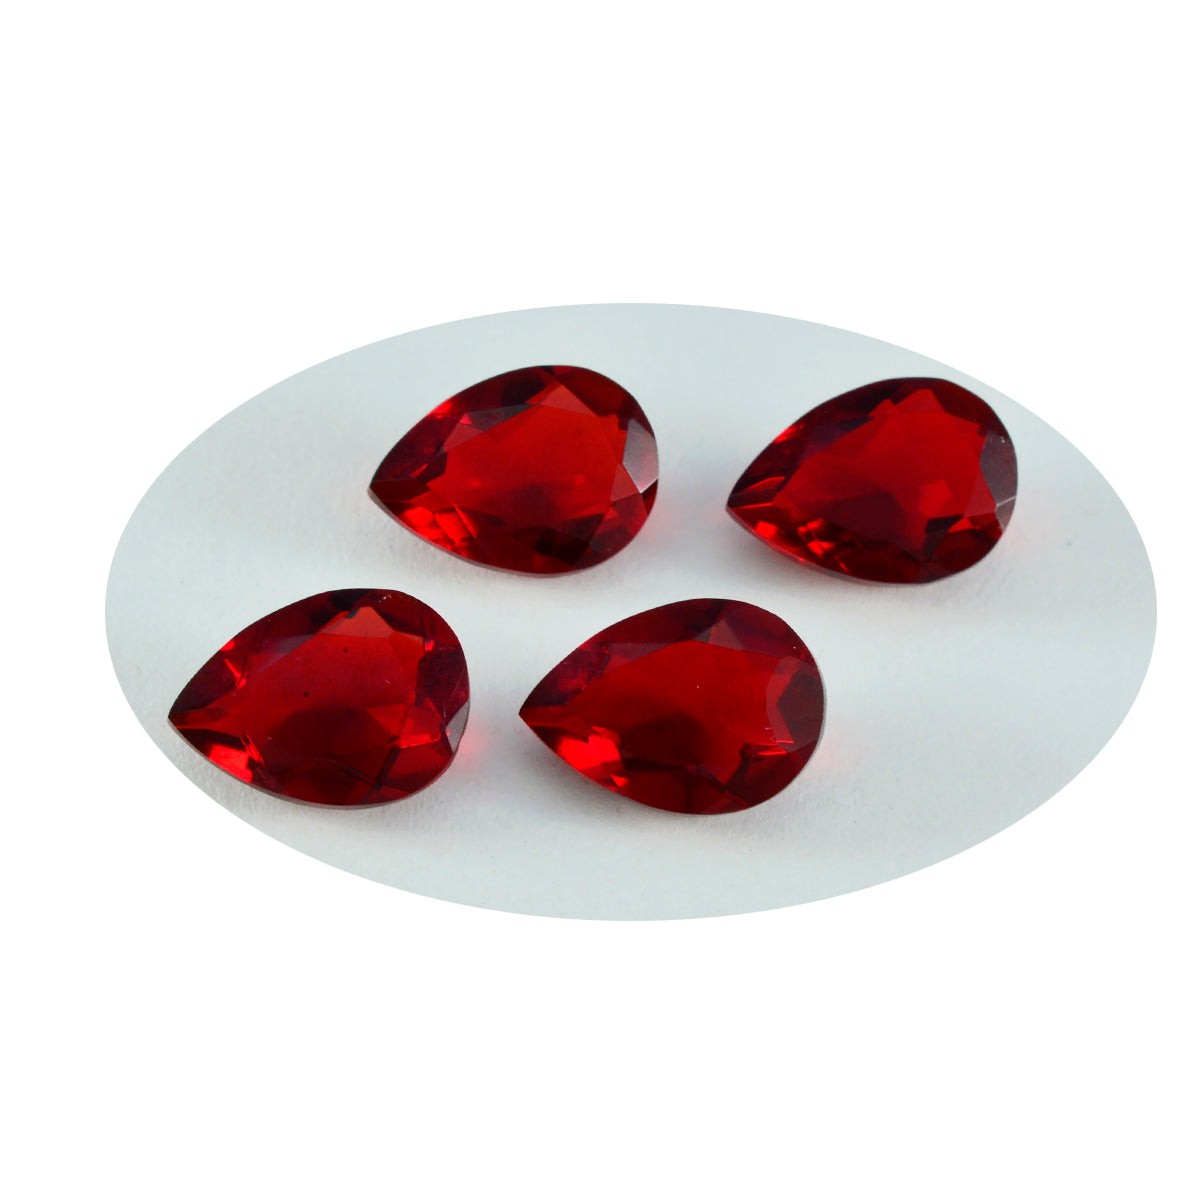 Riyogems 1 pièce rubis rouge cz à facettes 8x12mm en forme de poire, pierres précieuses en vrac de qualité mignonne